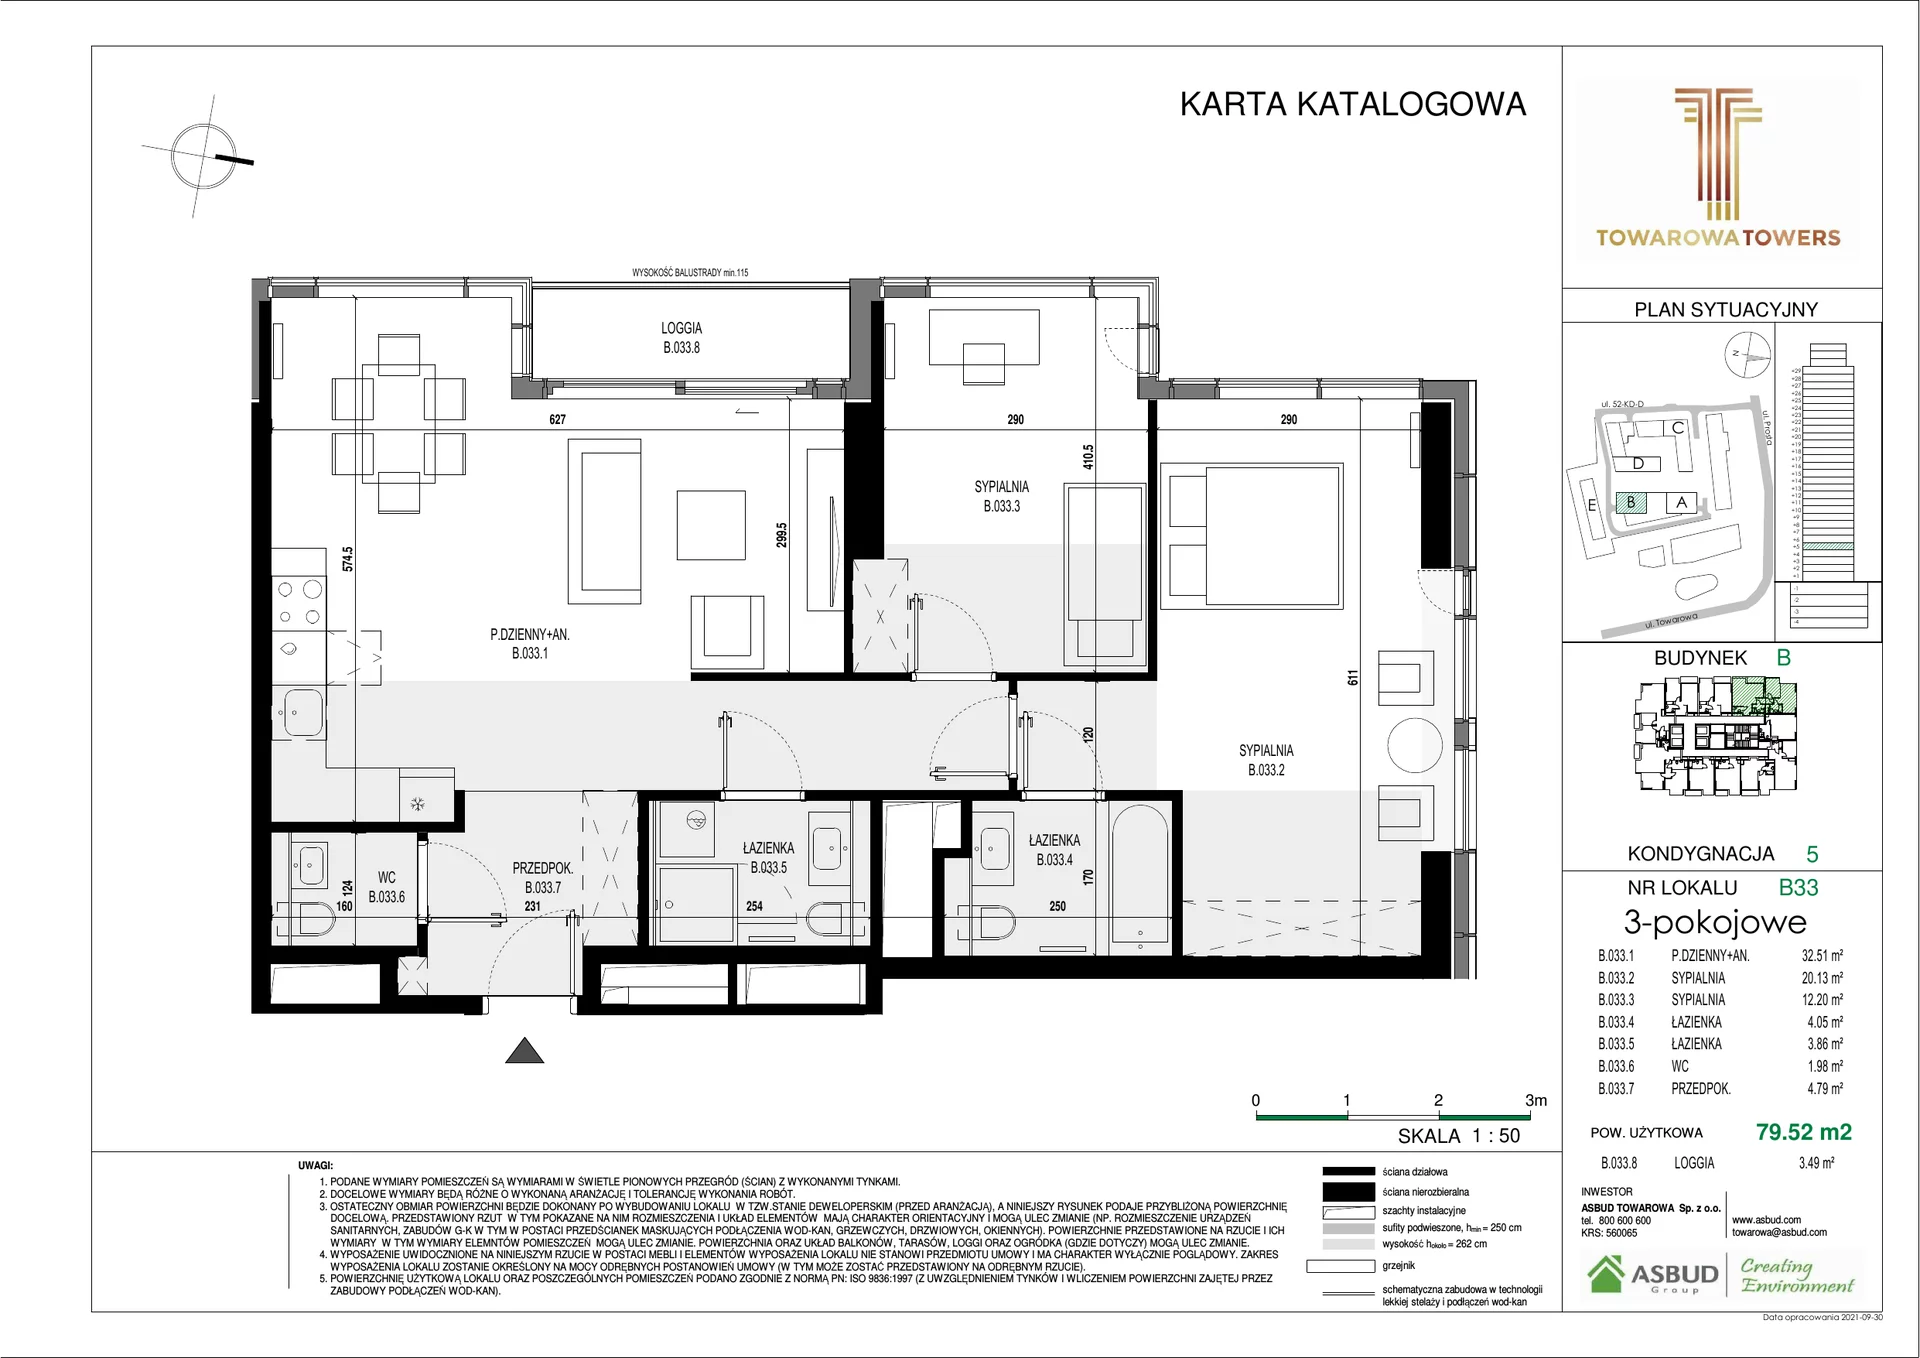 Apartament na sprzedaż 79,52 m², piętro 5, oferta nr B.033